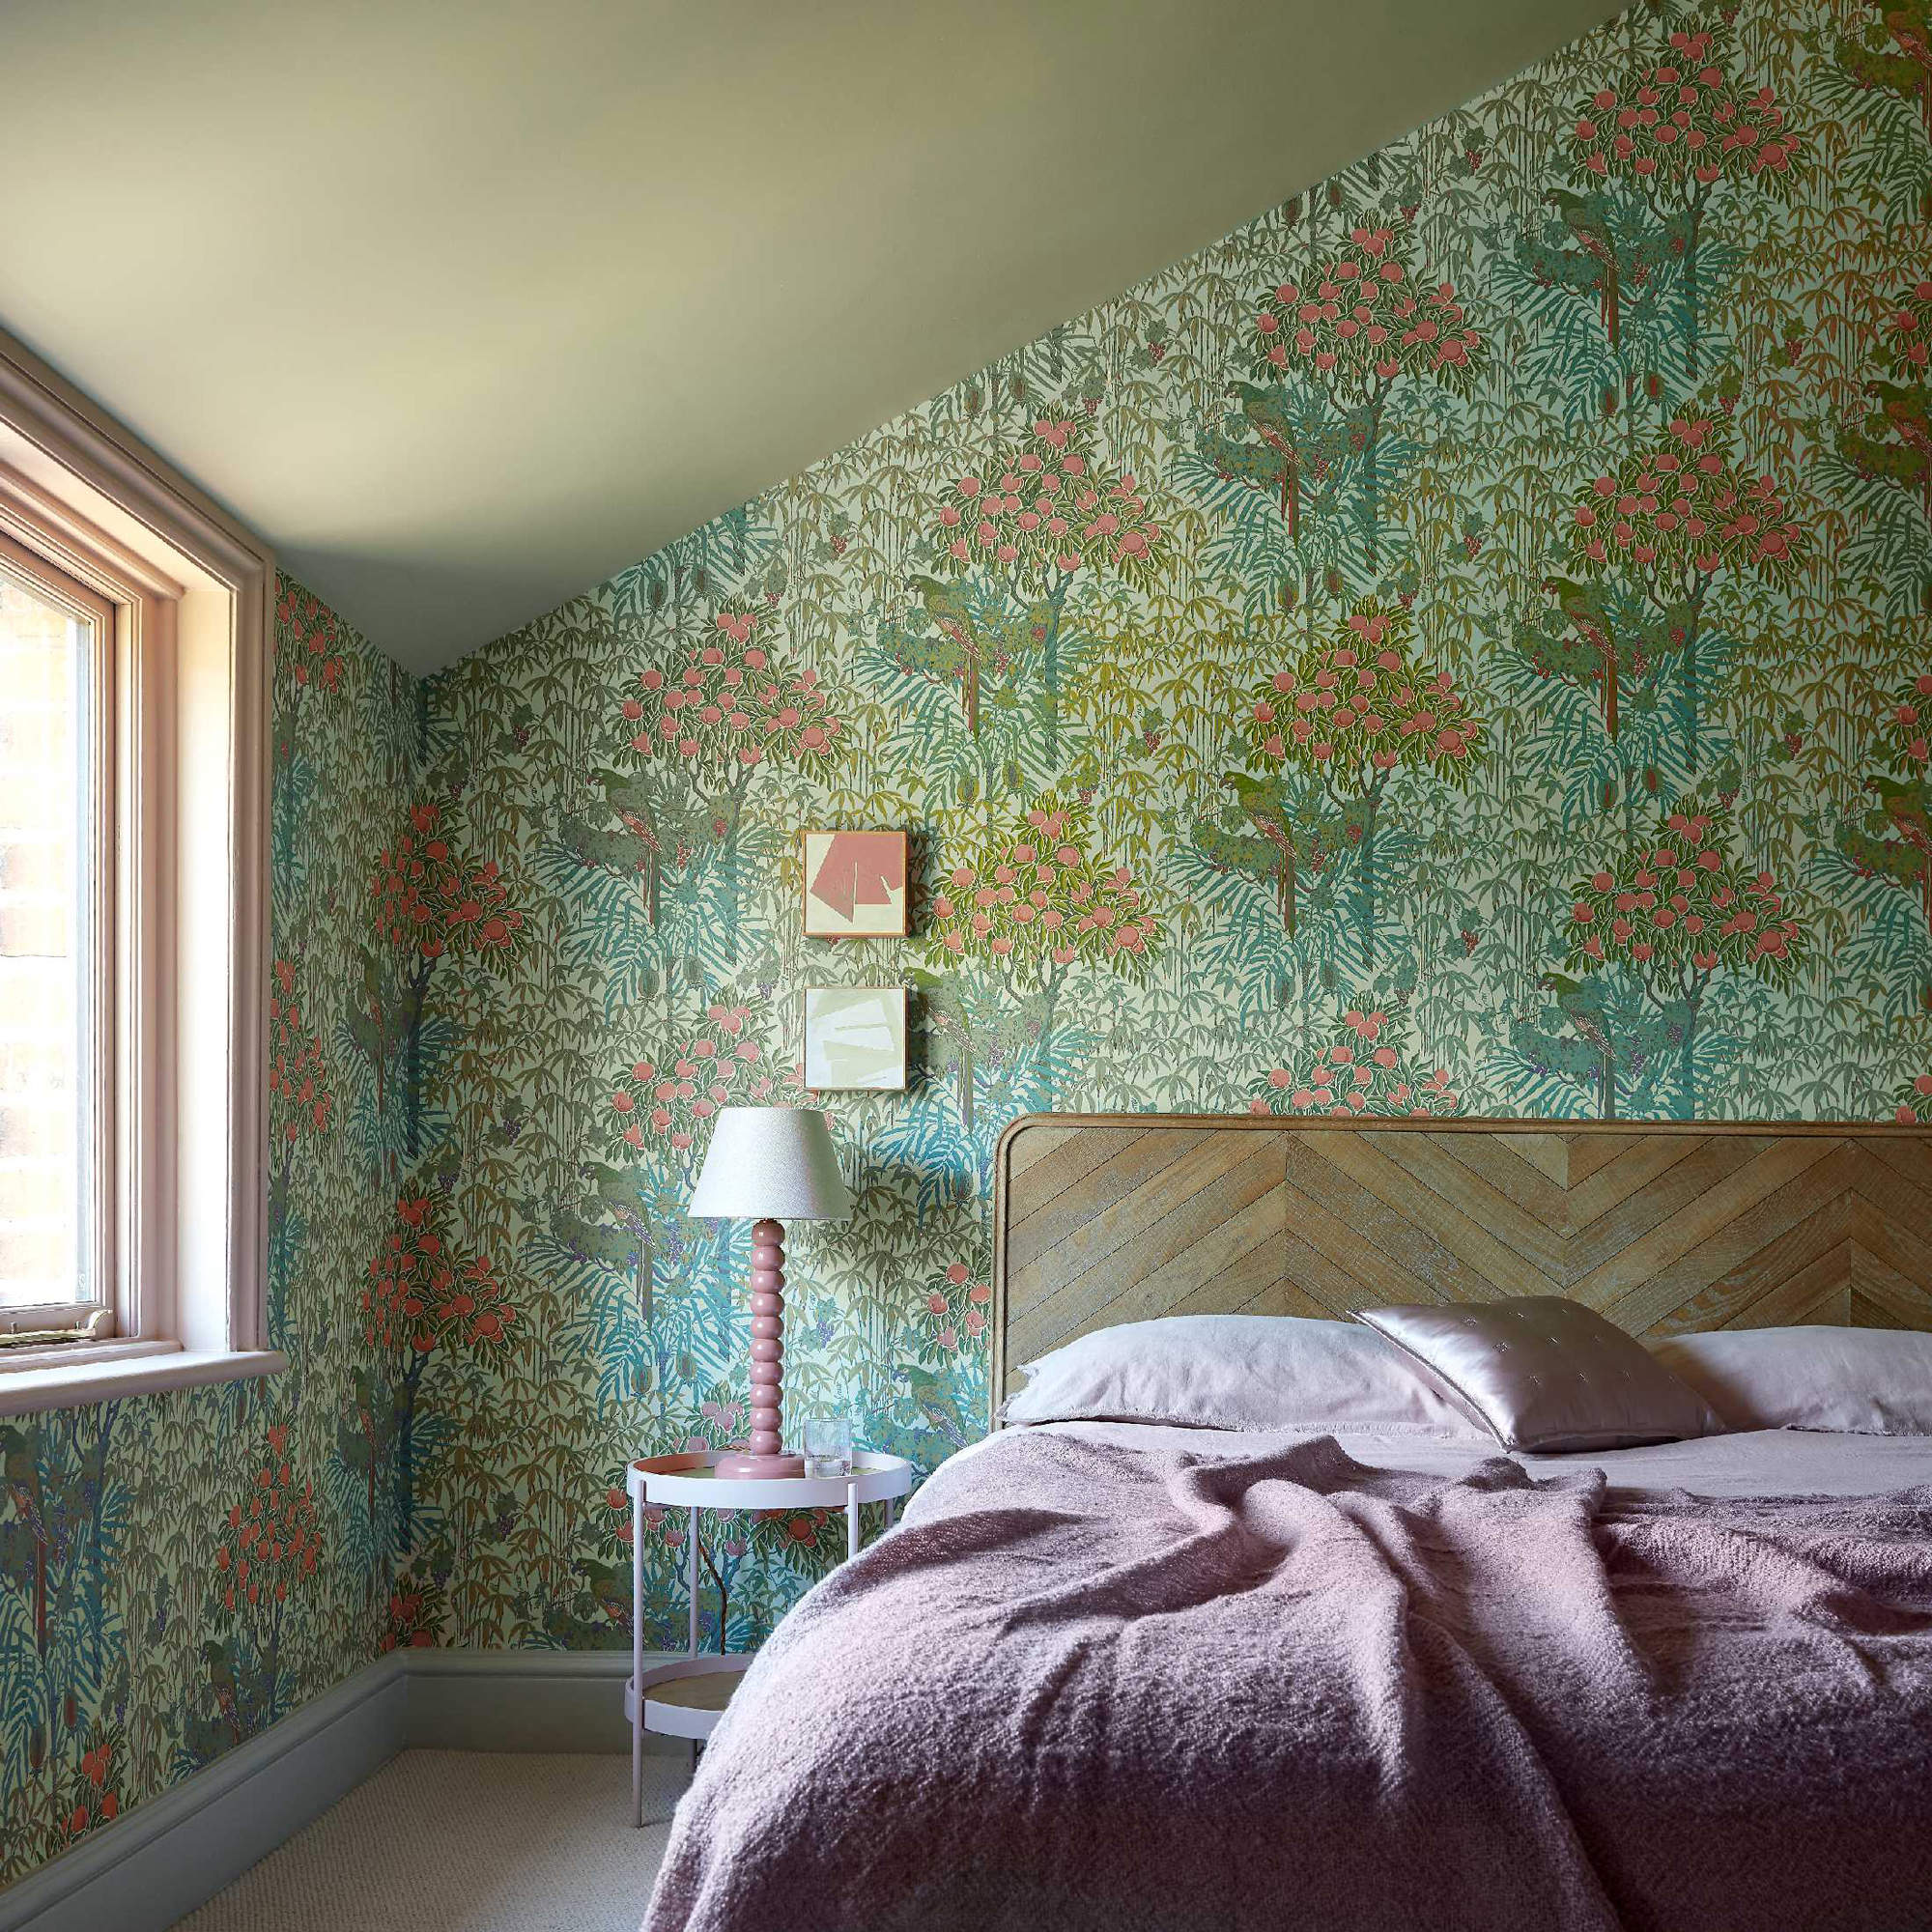 Dormitorio con papel pintado con estampado floral.